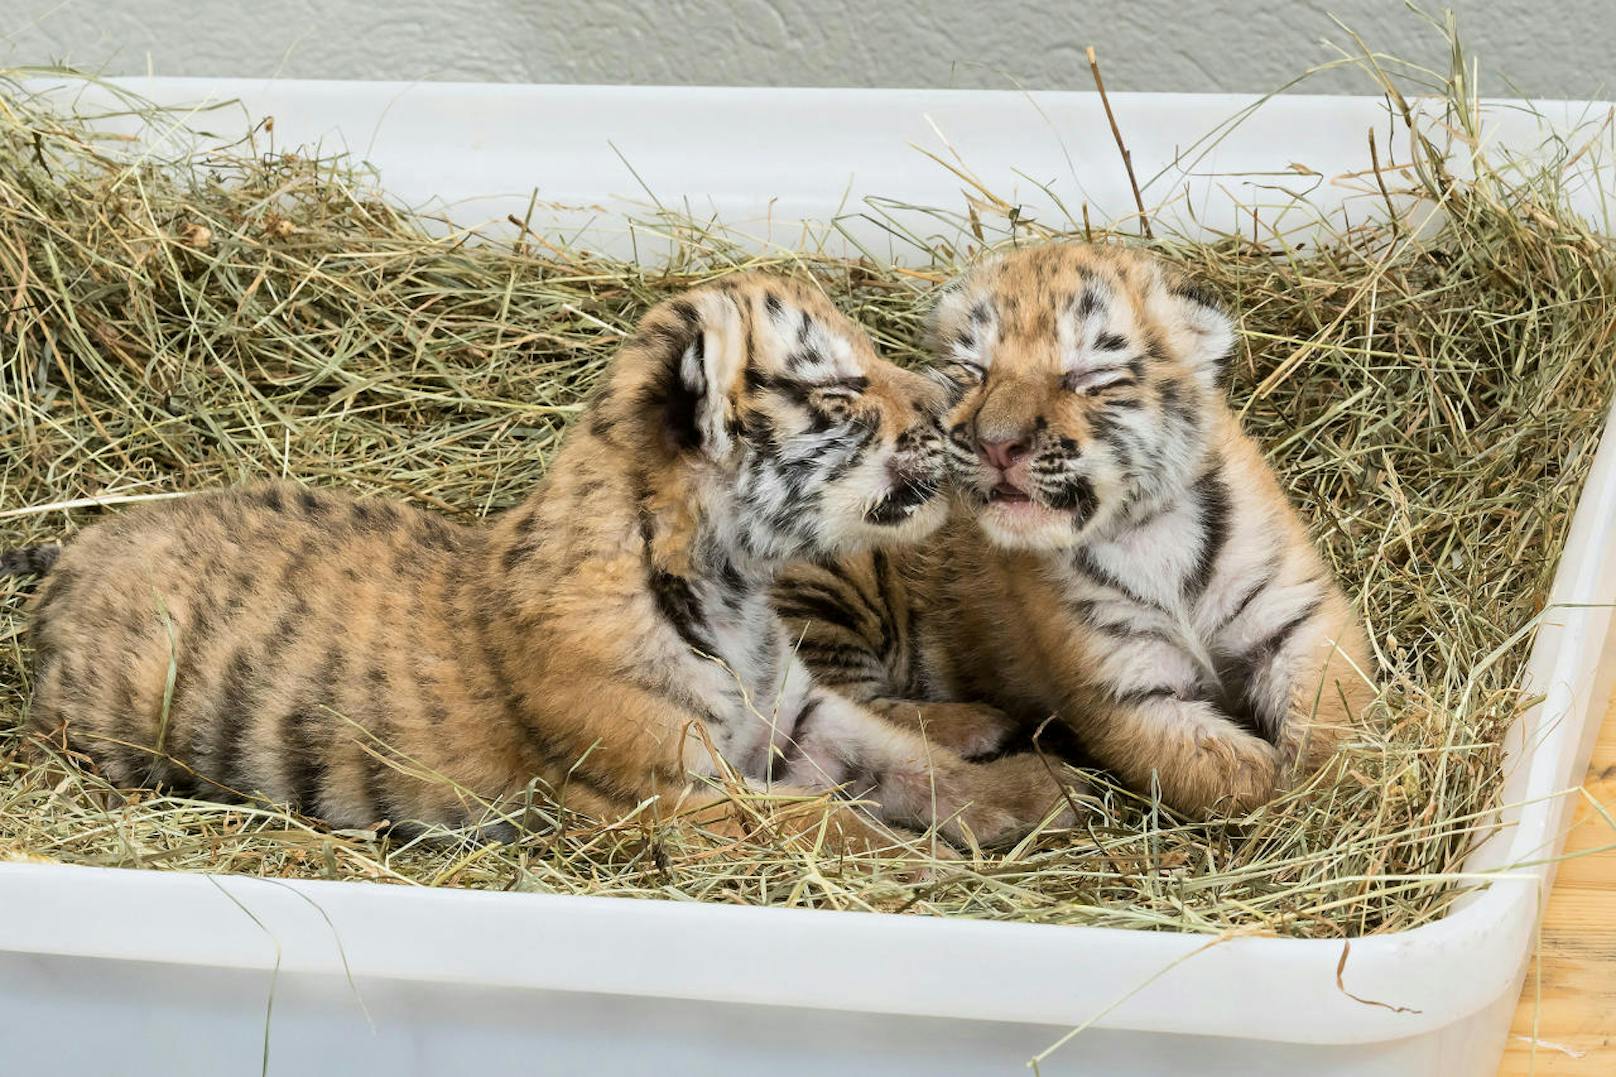 "Oáza sibírskeho tigra", die Oase des Sibirischen Tigers. So nennt sich jene slowakische Tigerfarm, aus der die beiden Jungtiere "Sangha" und "Kumal" nach Hainburg (NÖ) gebracht wurden, um in einer Badewanne aufgezogen zu werden.